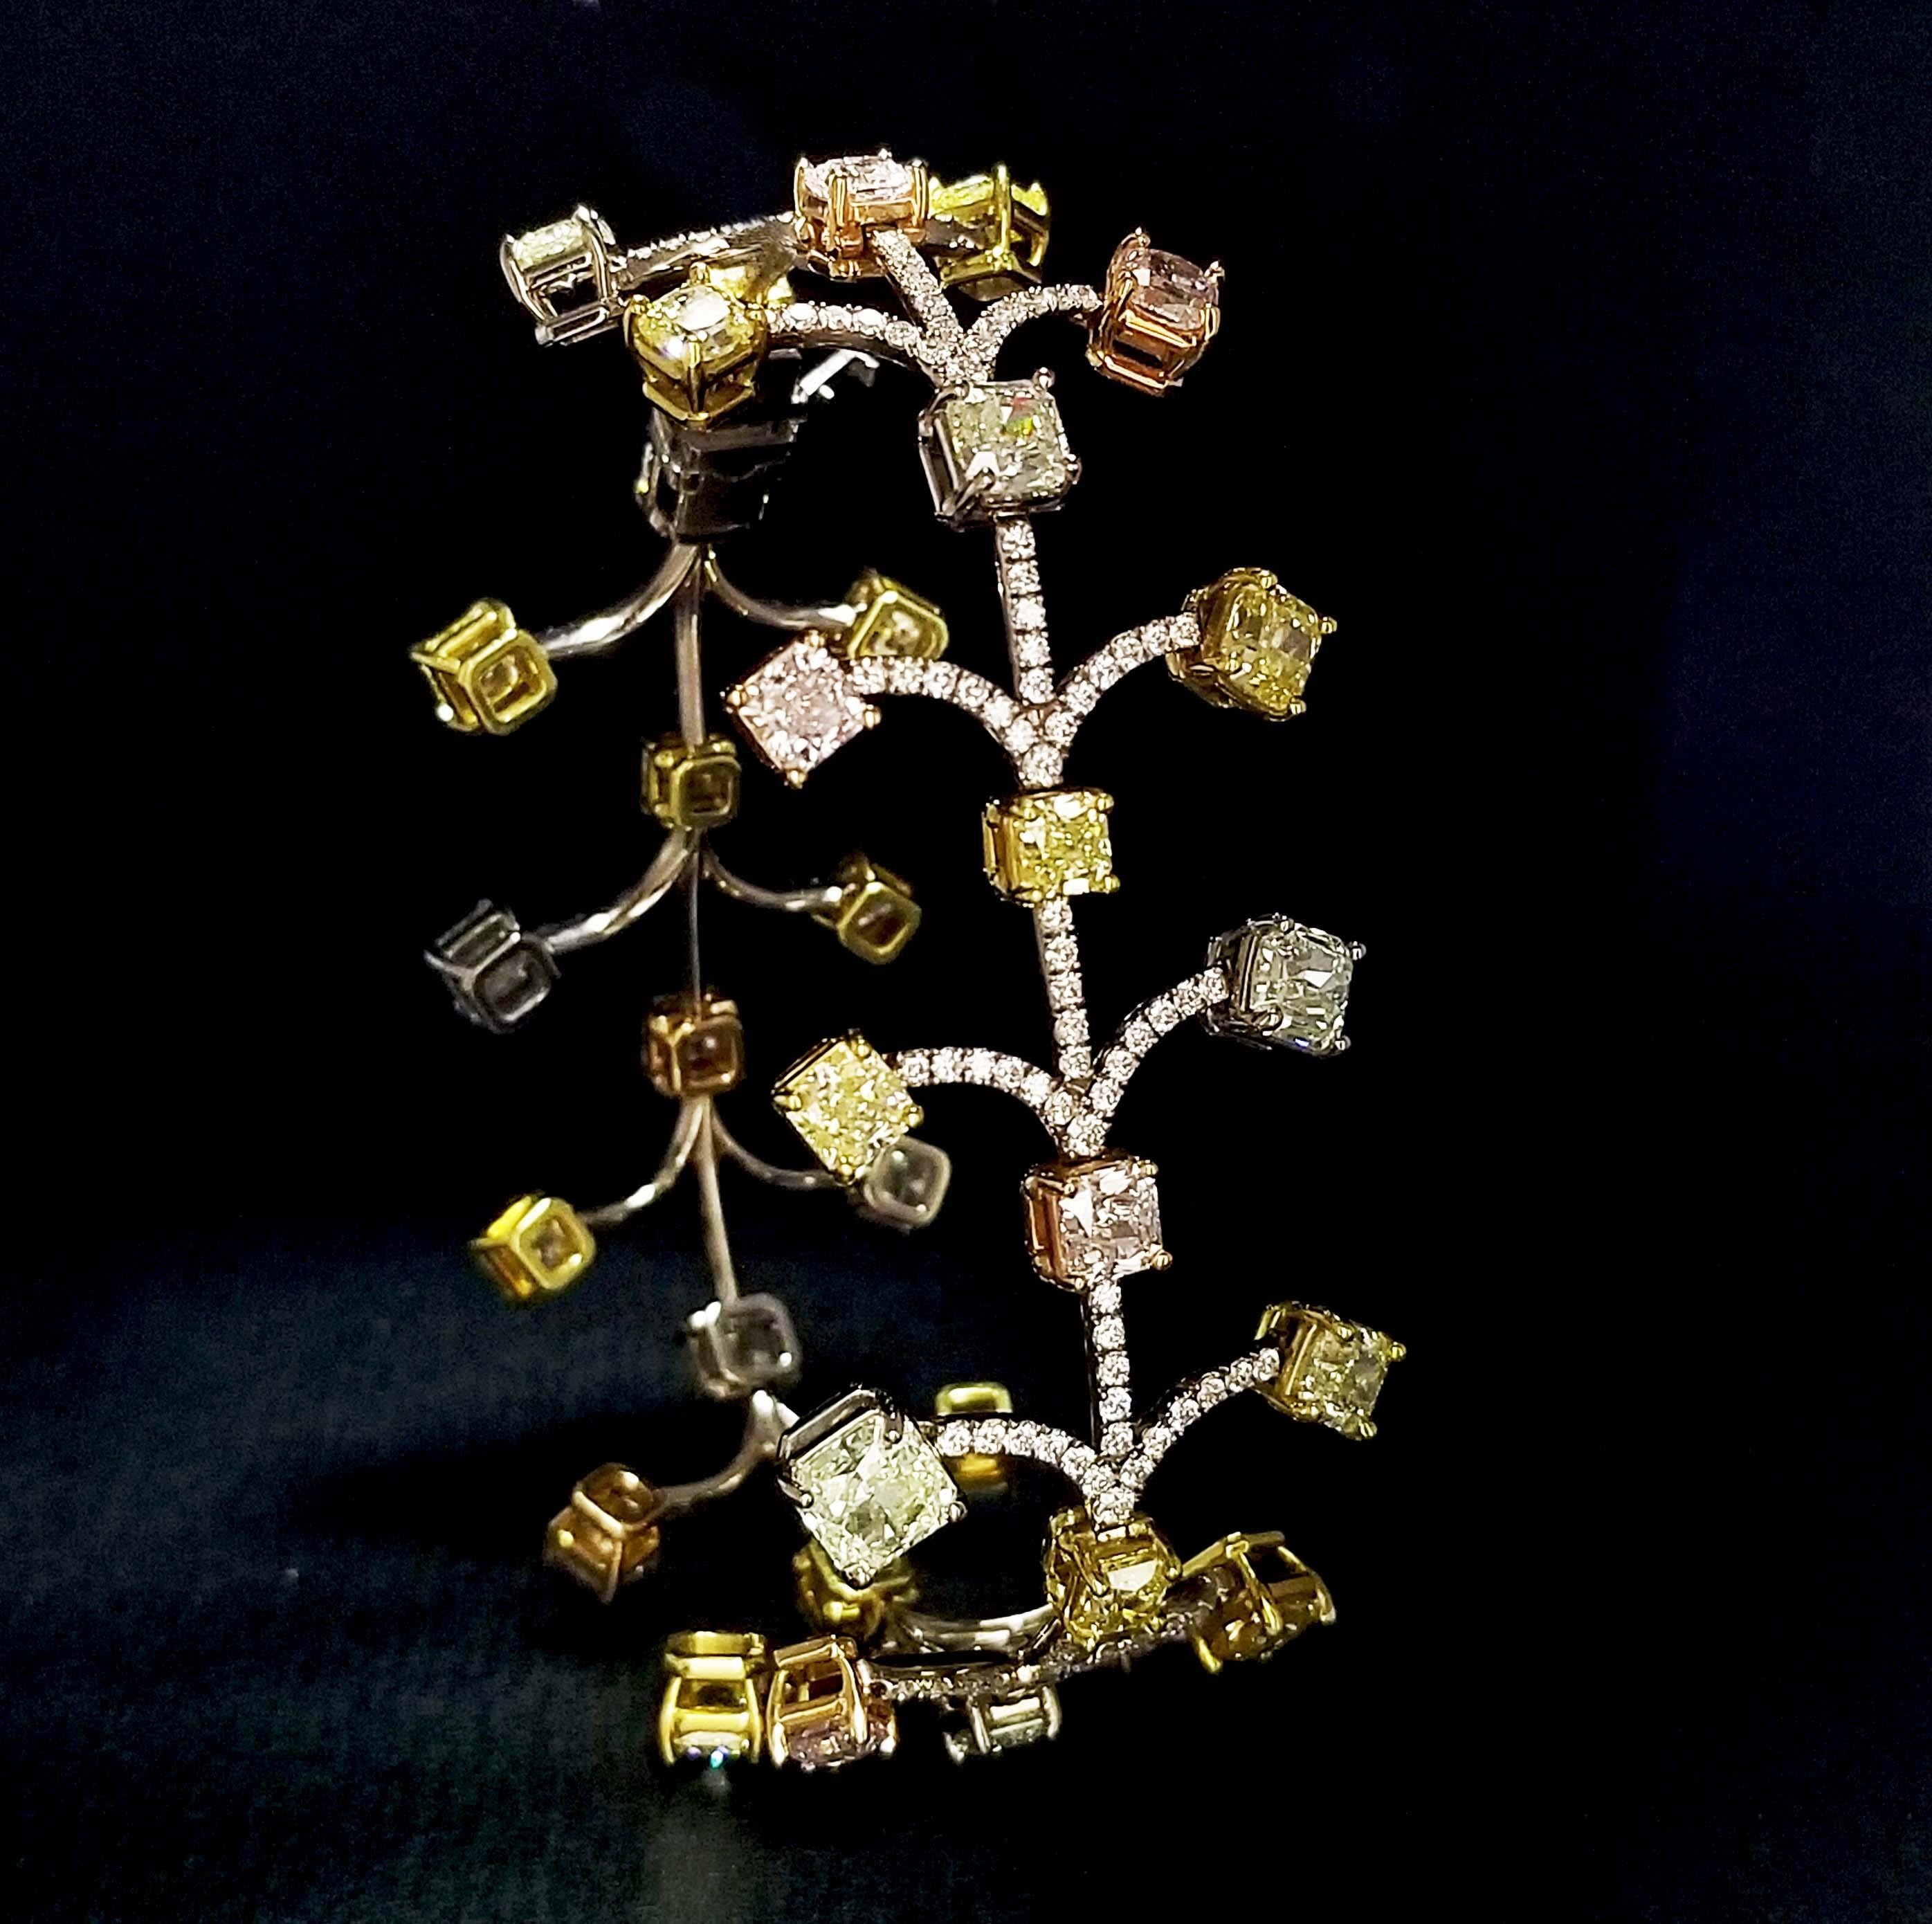 Von SCARSELLI, weltweit anerkannt für natürliche Fancy-Diamanten in Investmentqualität, stammt dieses leichte und luftige Diamantarmband mit einer Reihe natürlicher Fancy-Diamanten im Brillantschliff, die das Handgelenk umschließen.  Dieses Armband